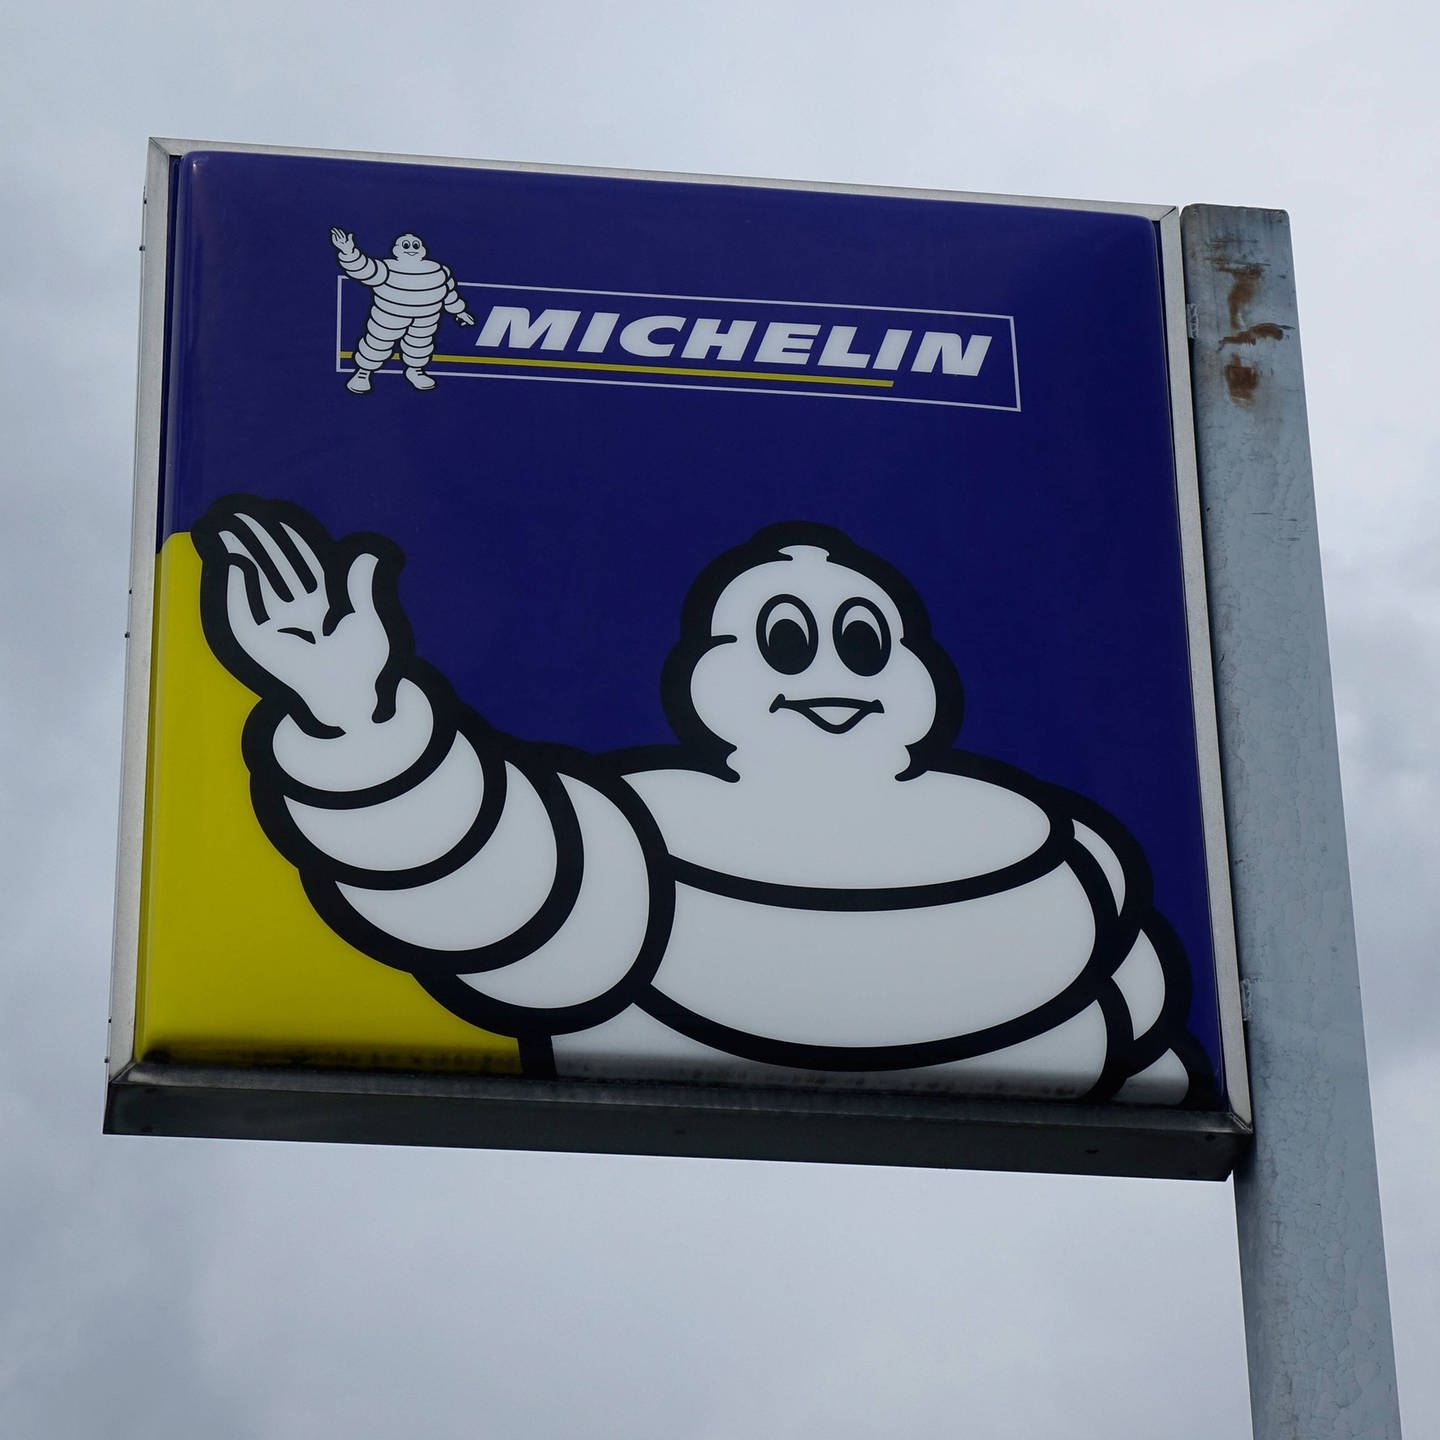 600 Jobs weg: Michelin schließt Werk in Karlsruhe - SWR Aktuell